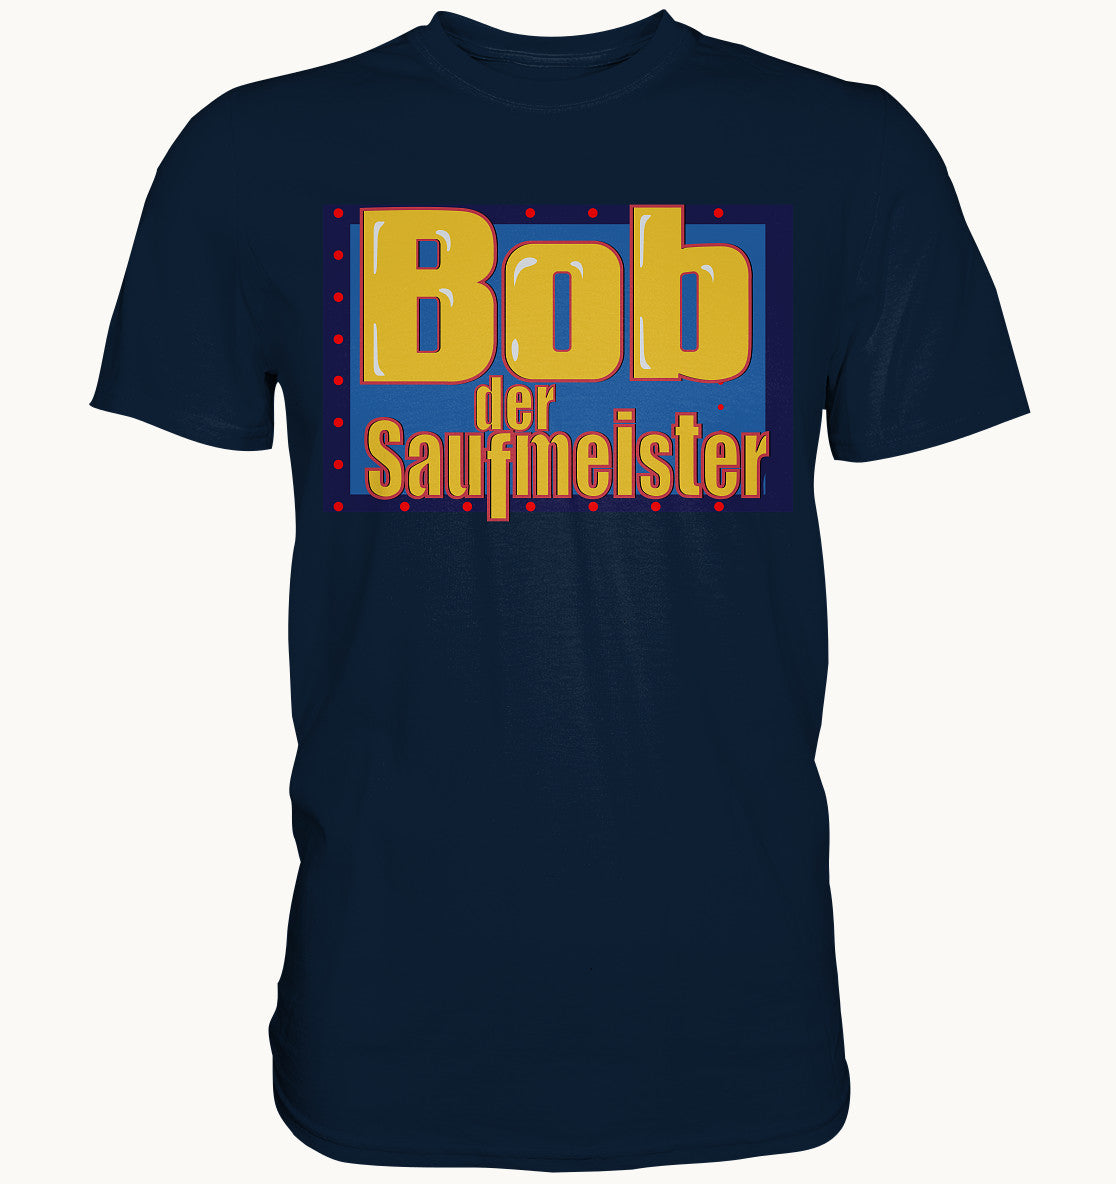 Bob der Saufmeister - Premium Shirt